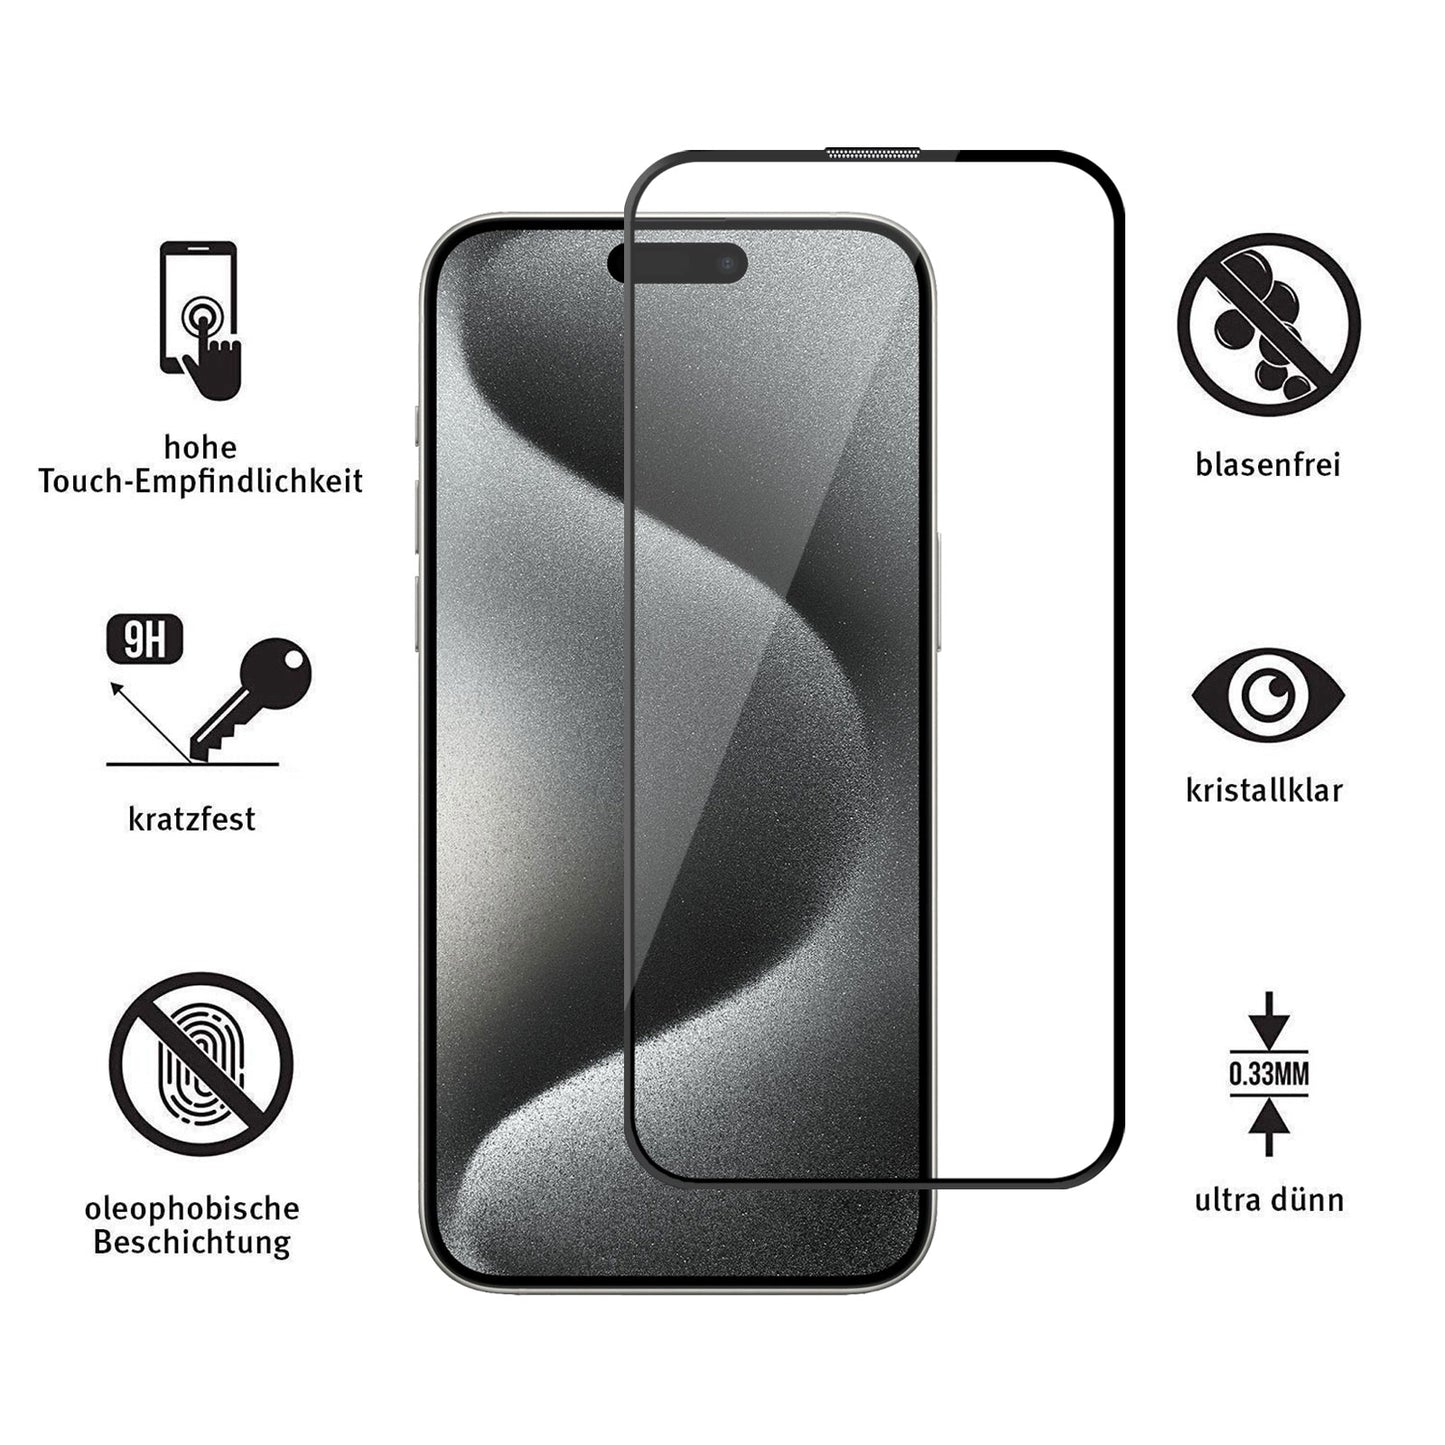 ArktisPRO iPhone 15 Pro Max FULL COVER Displayschutz GLAS - hüllenfreundlich - 2er Set